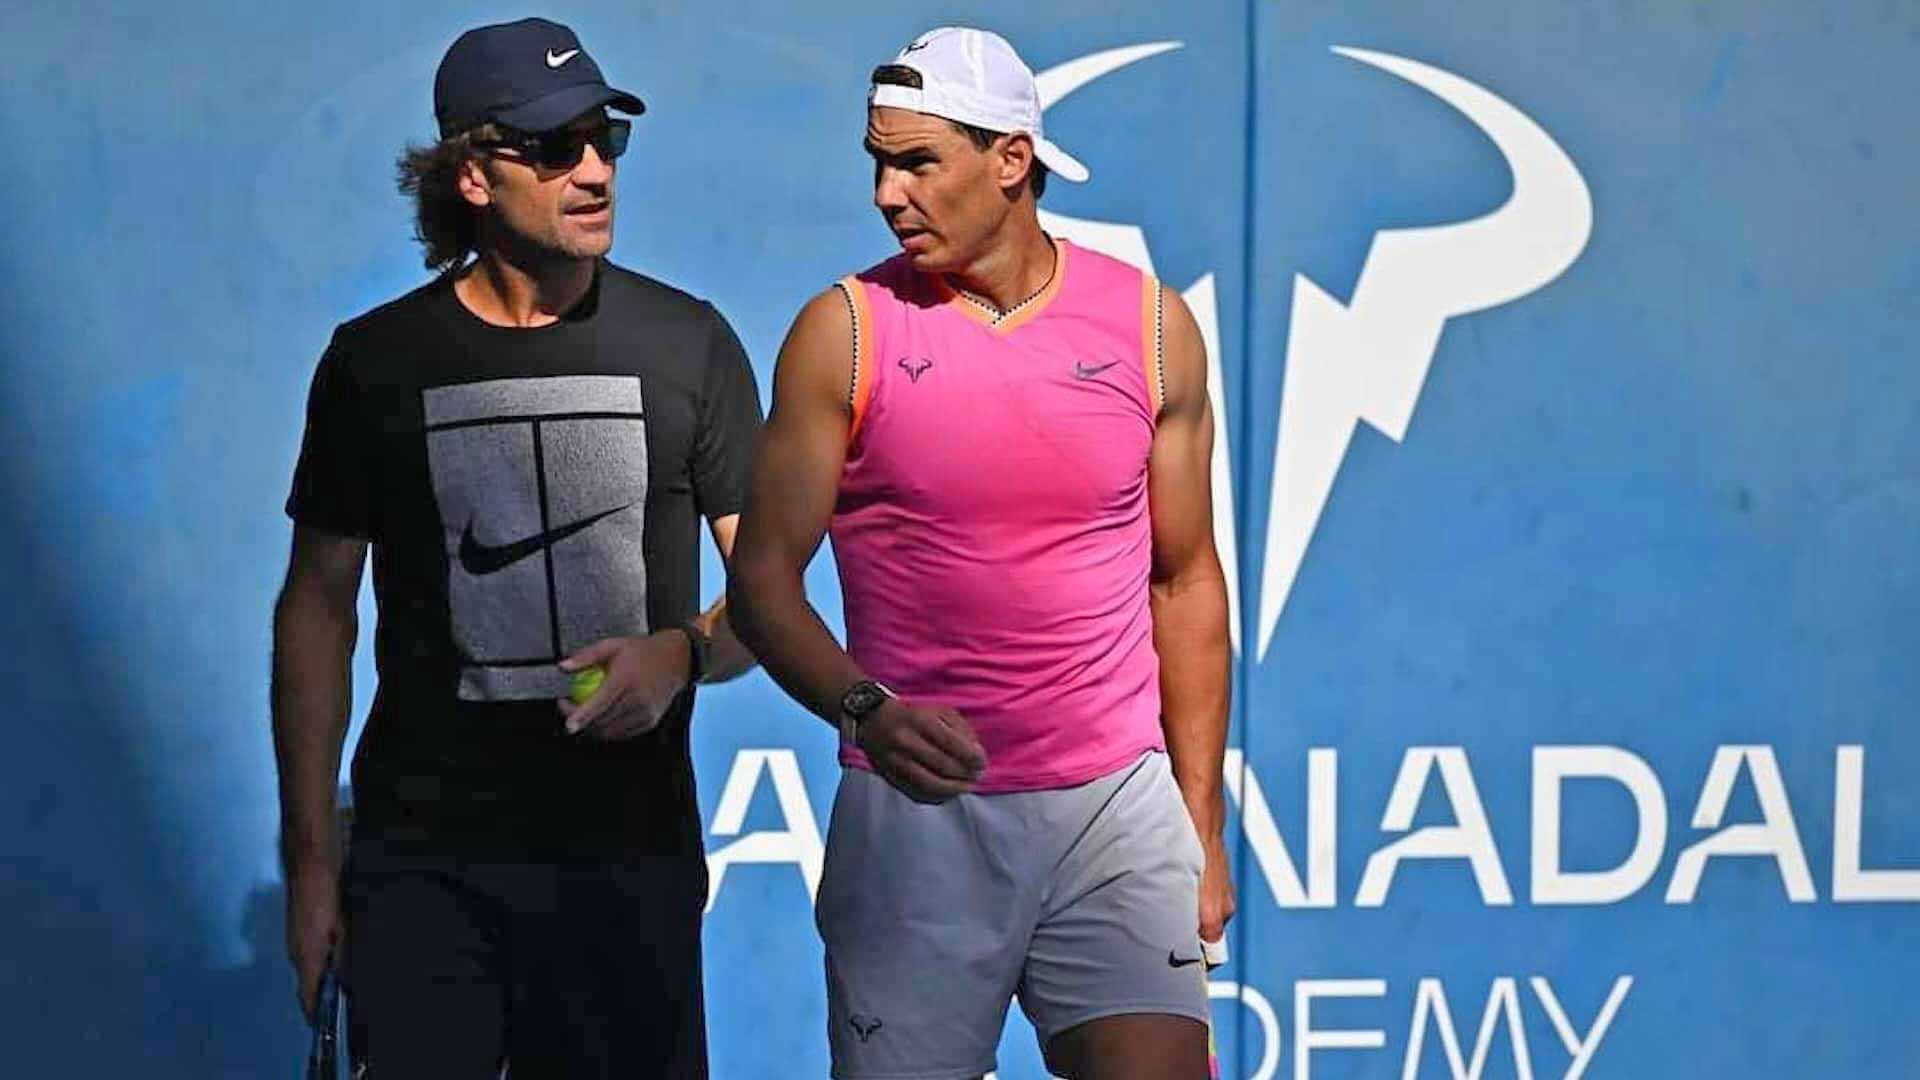 Quando será o próximo torneio ATP de tênis no Brasil ? - Tenis News